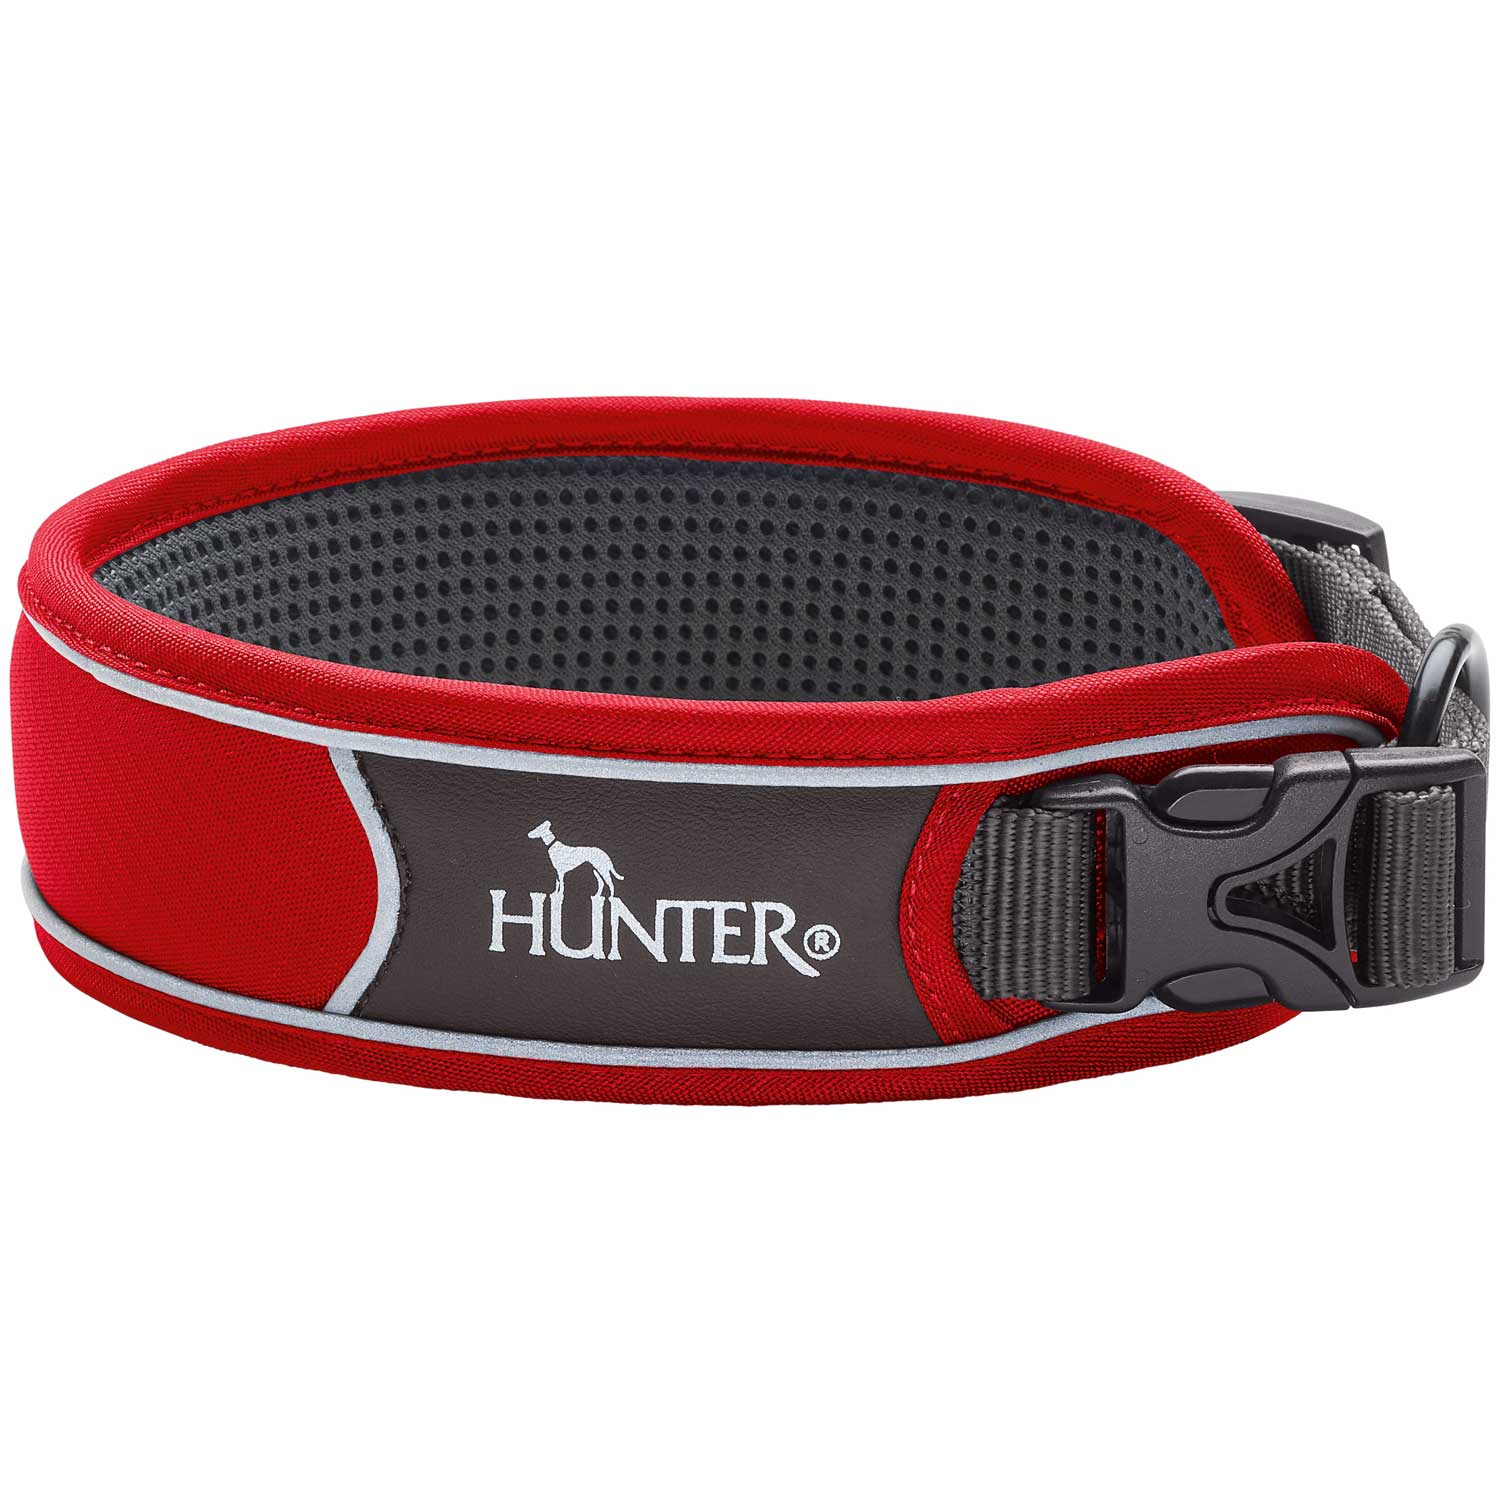 Voorkeur Trekken In werkelijkheid Luxe design honden halsbanden van Hunter